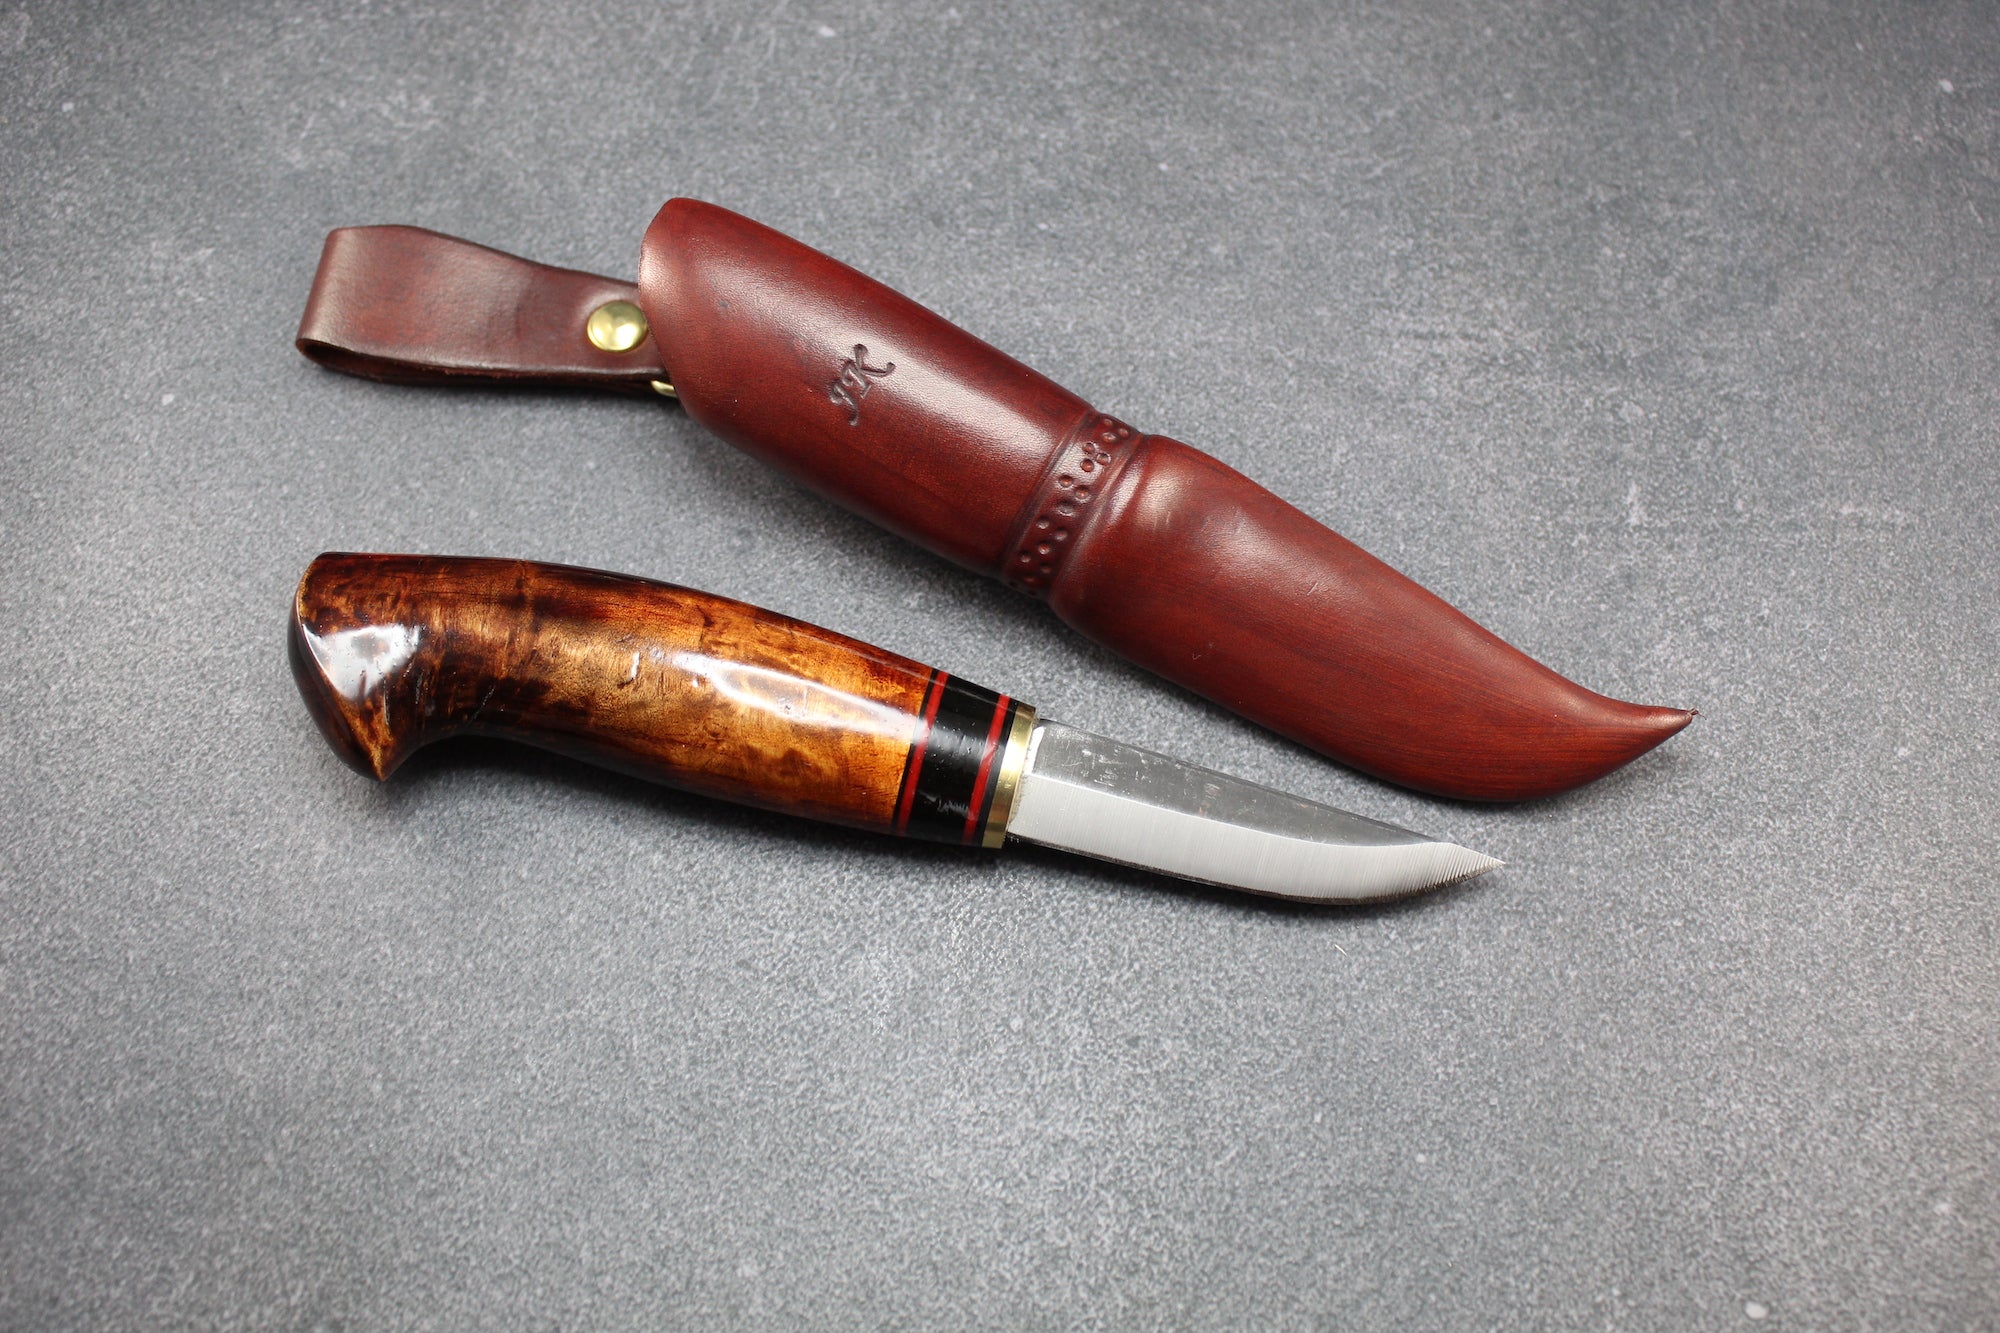 Puukko knife, Handmade . – Suomalaista käsityötä – Kiki Knives